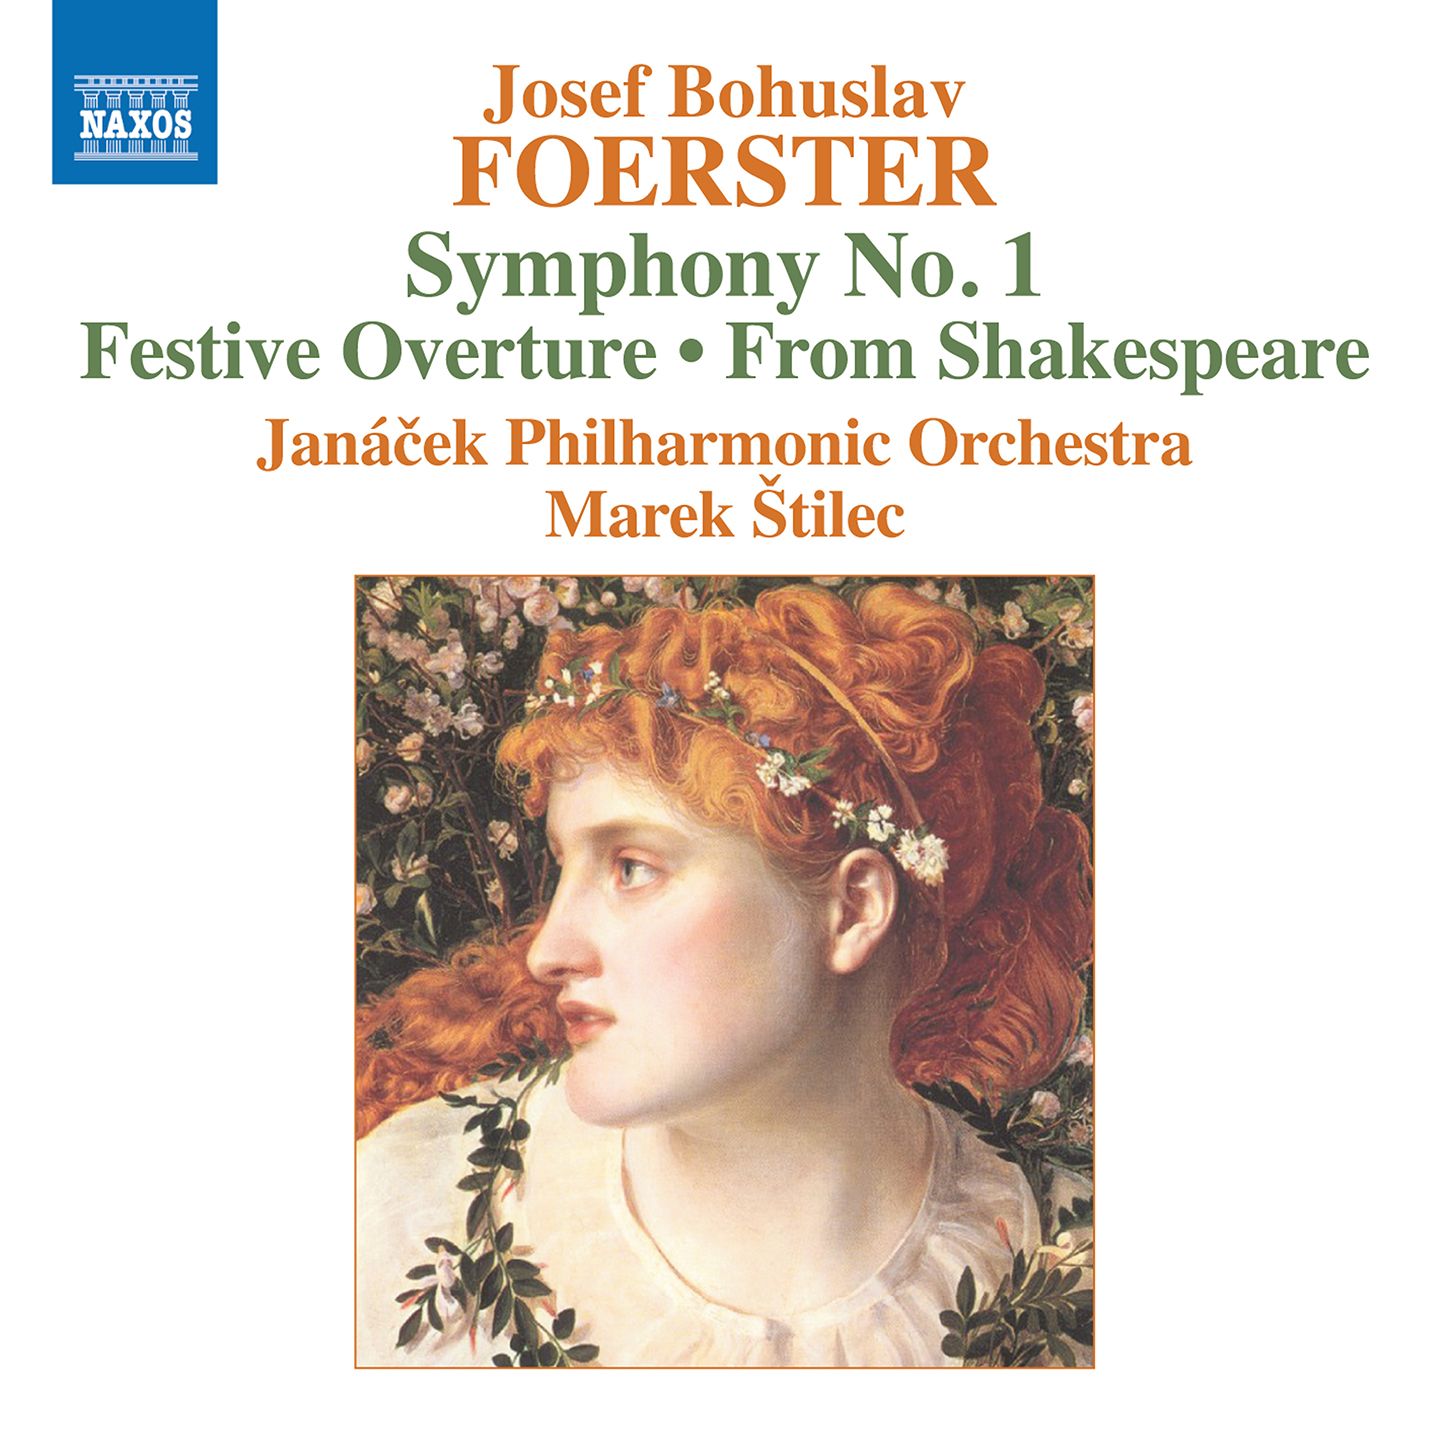 Josef Bohuslav Foerster: Orchestral Works